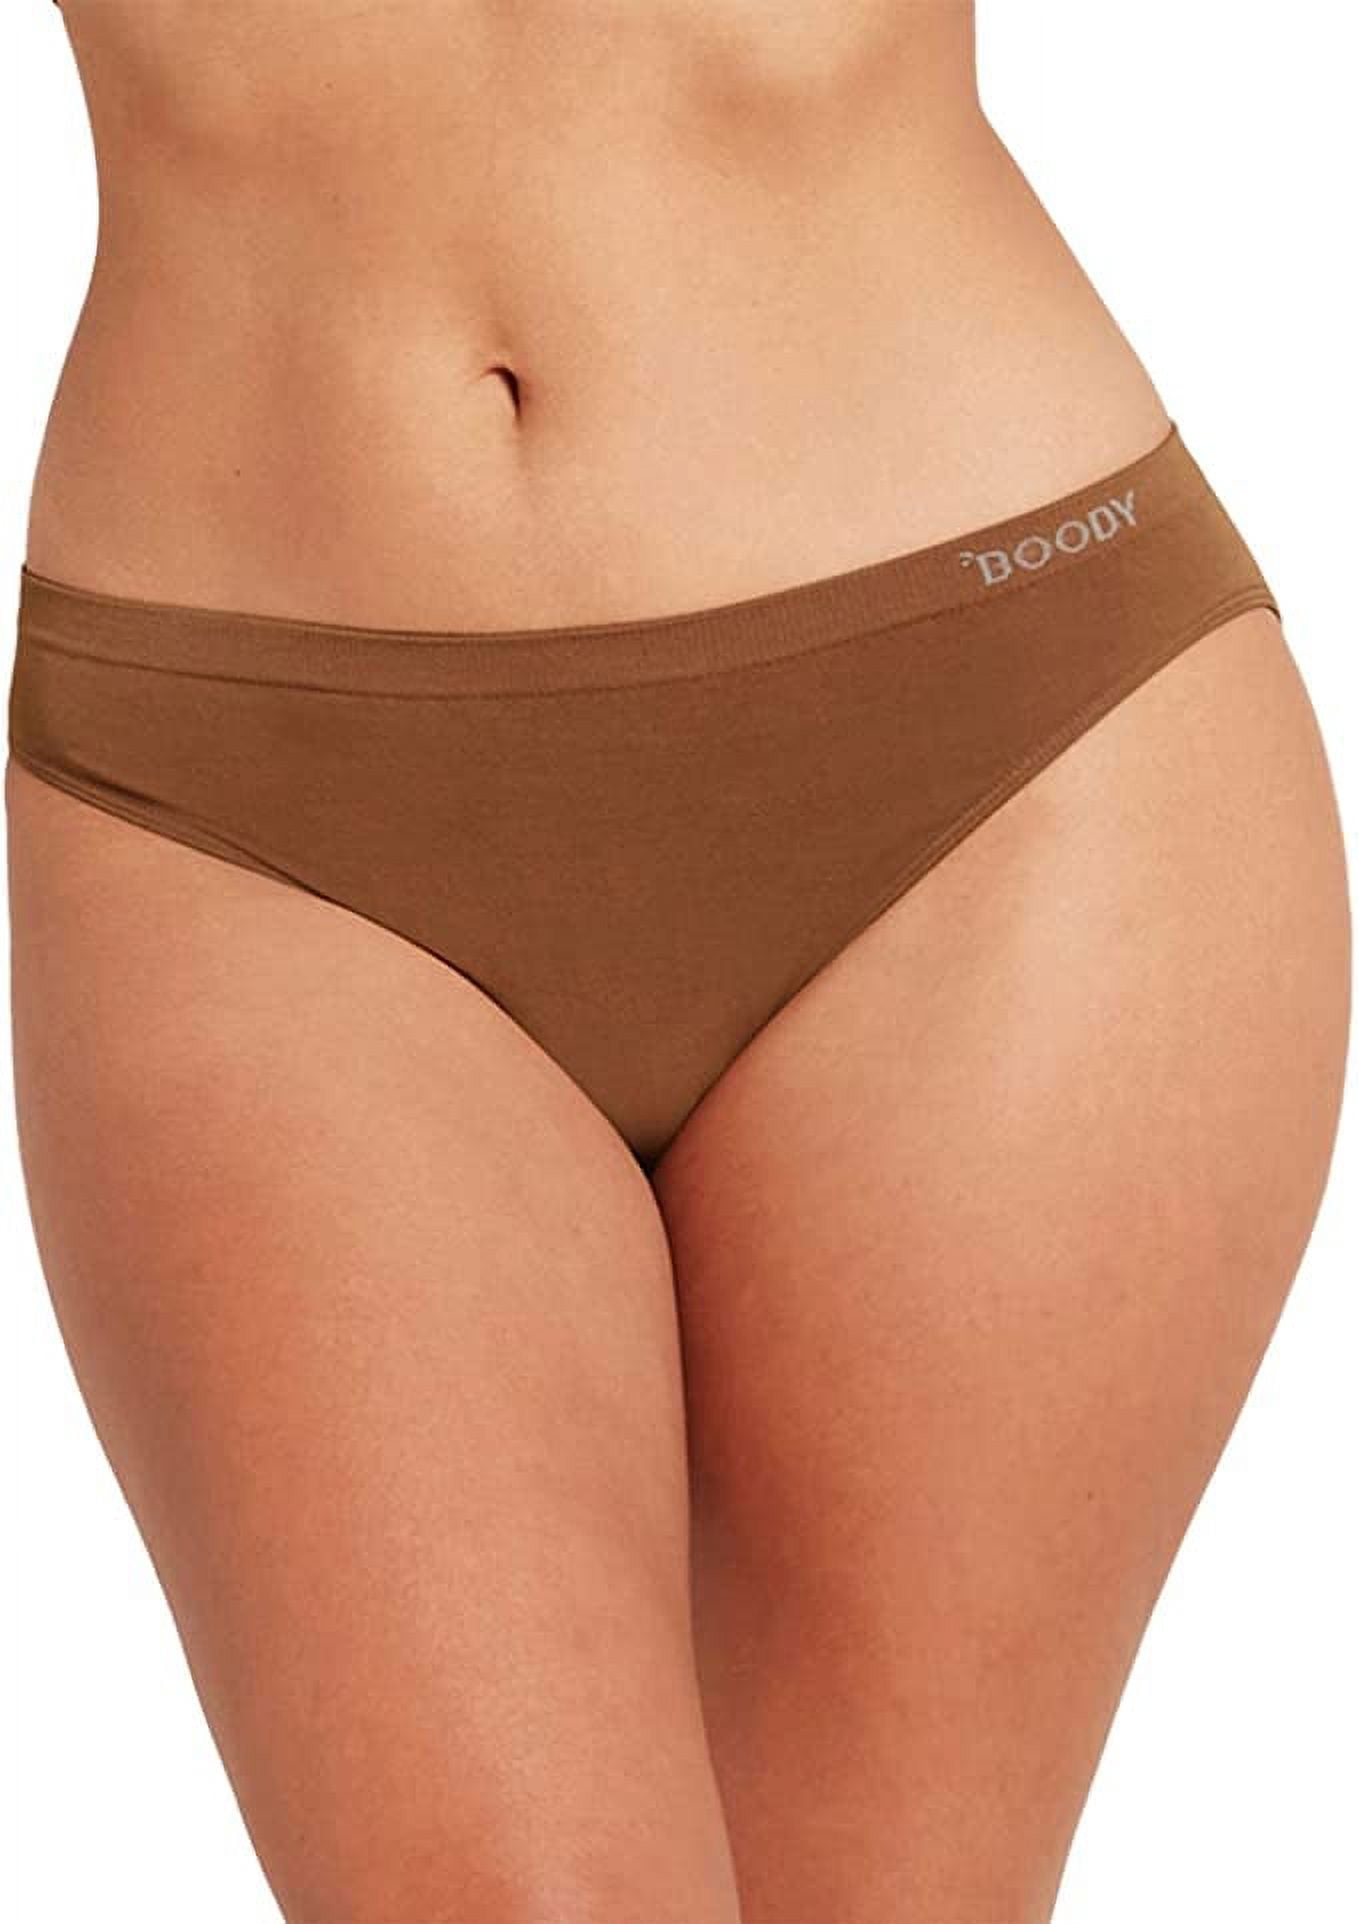 Boody Body Ecowear Women's Classic Bikini - Bamboo Viscose - Nude 4, x-Small